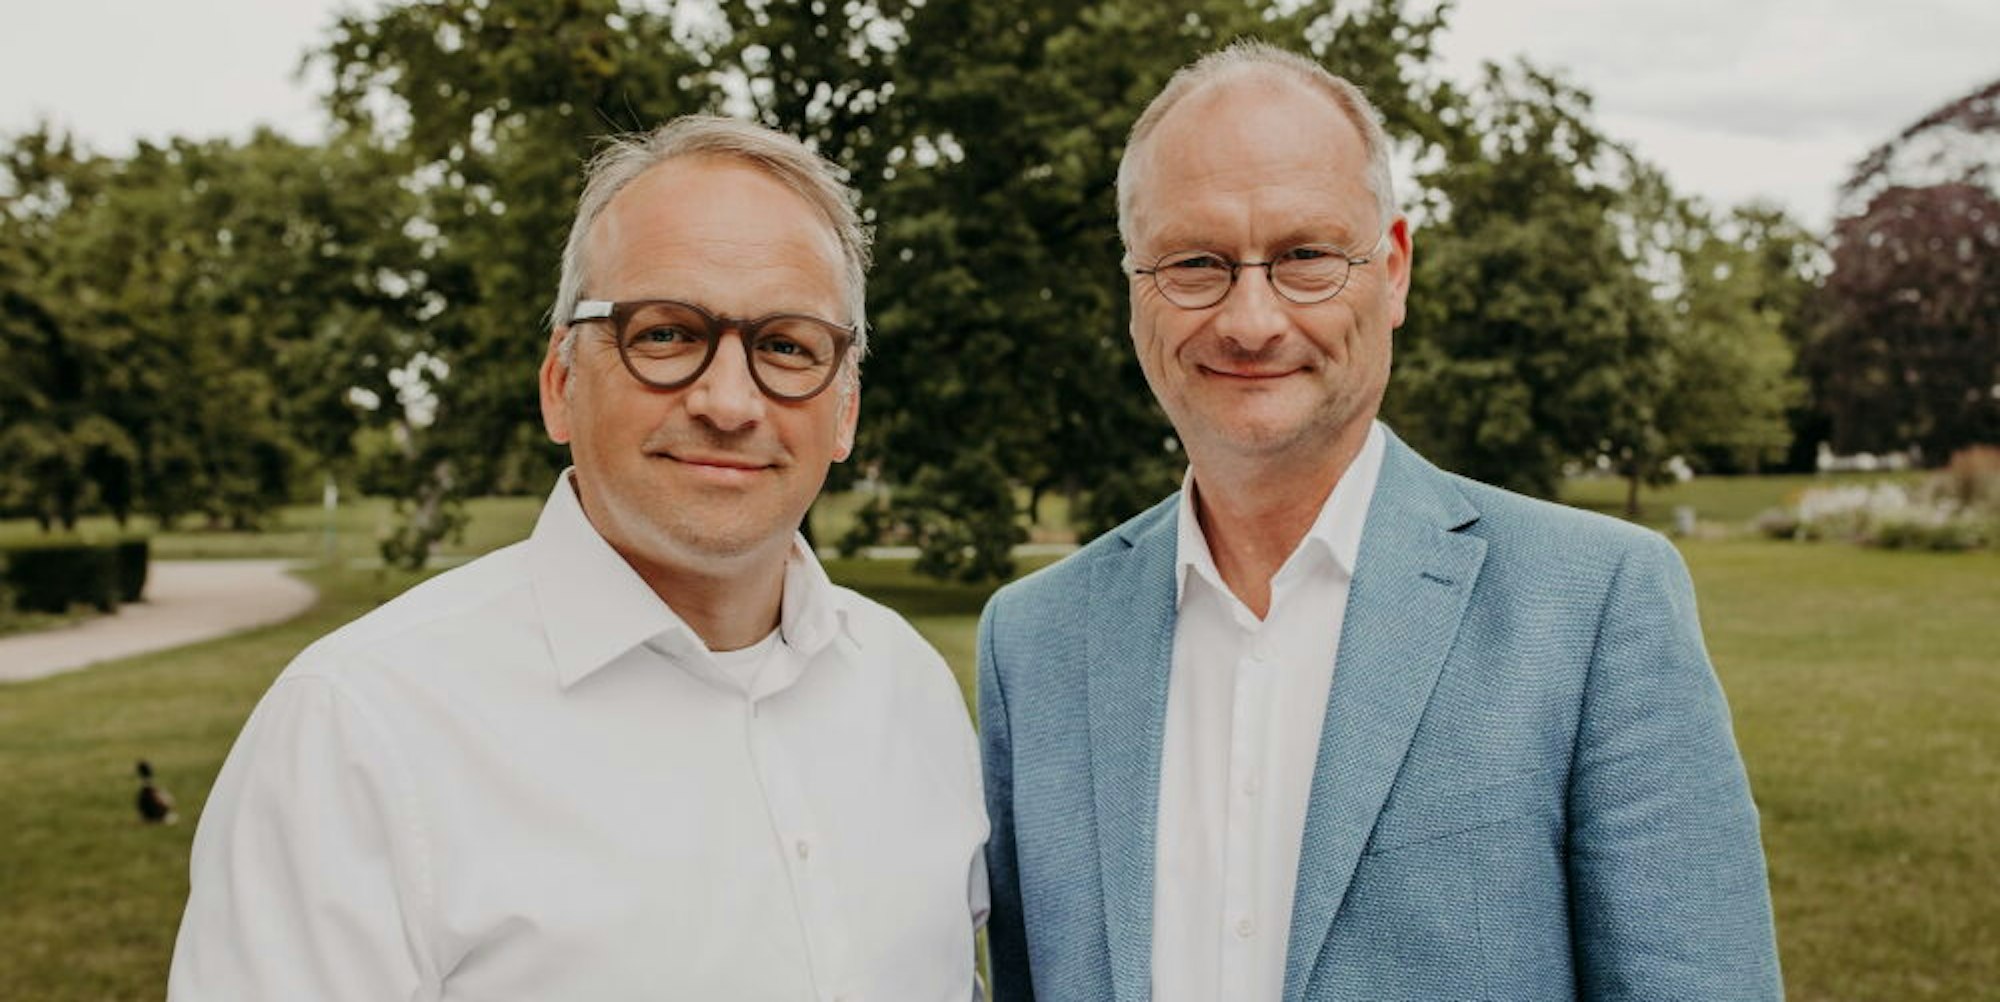 Christoph Waffenschmidt und Sven Plöger